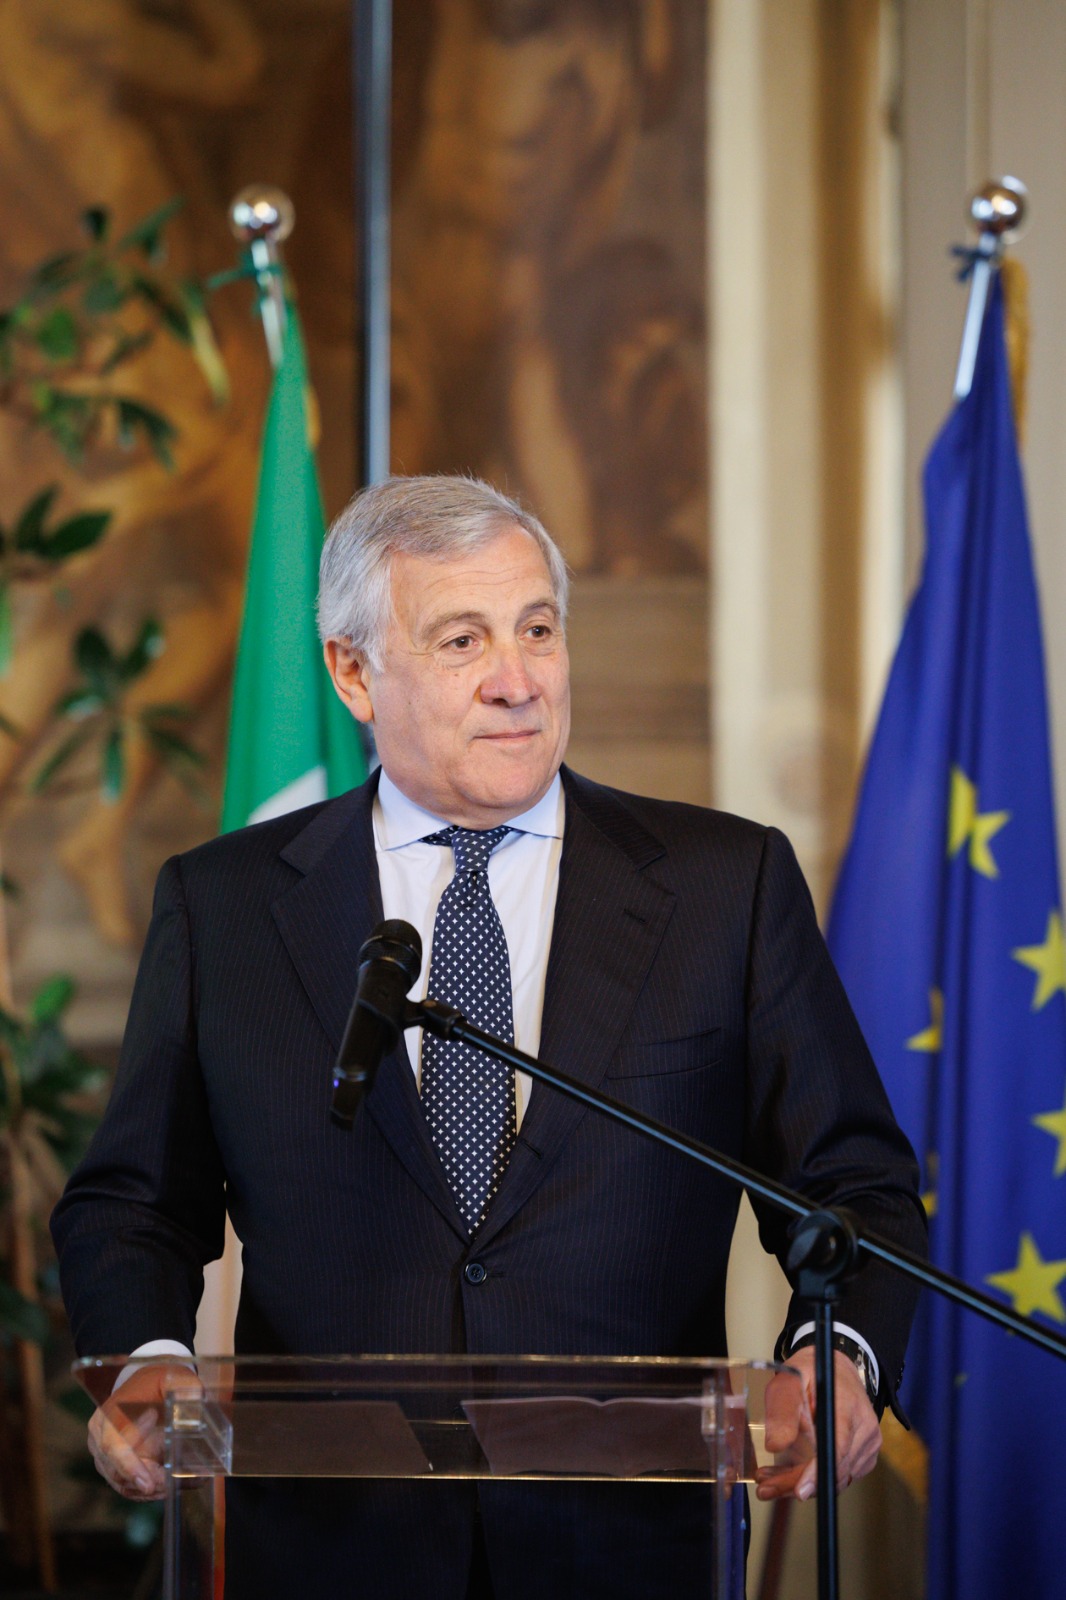 Il ministro Antonio Tajani inaugura la nuova sede del Consolato generale italiano a Bruxelles